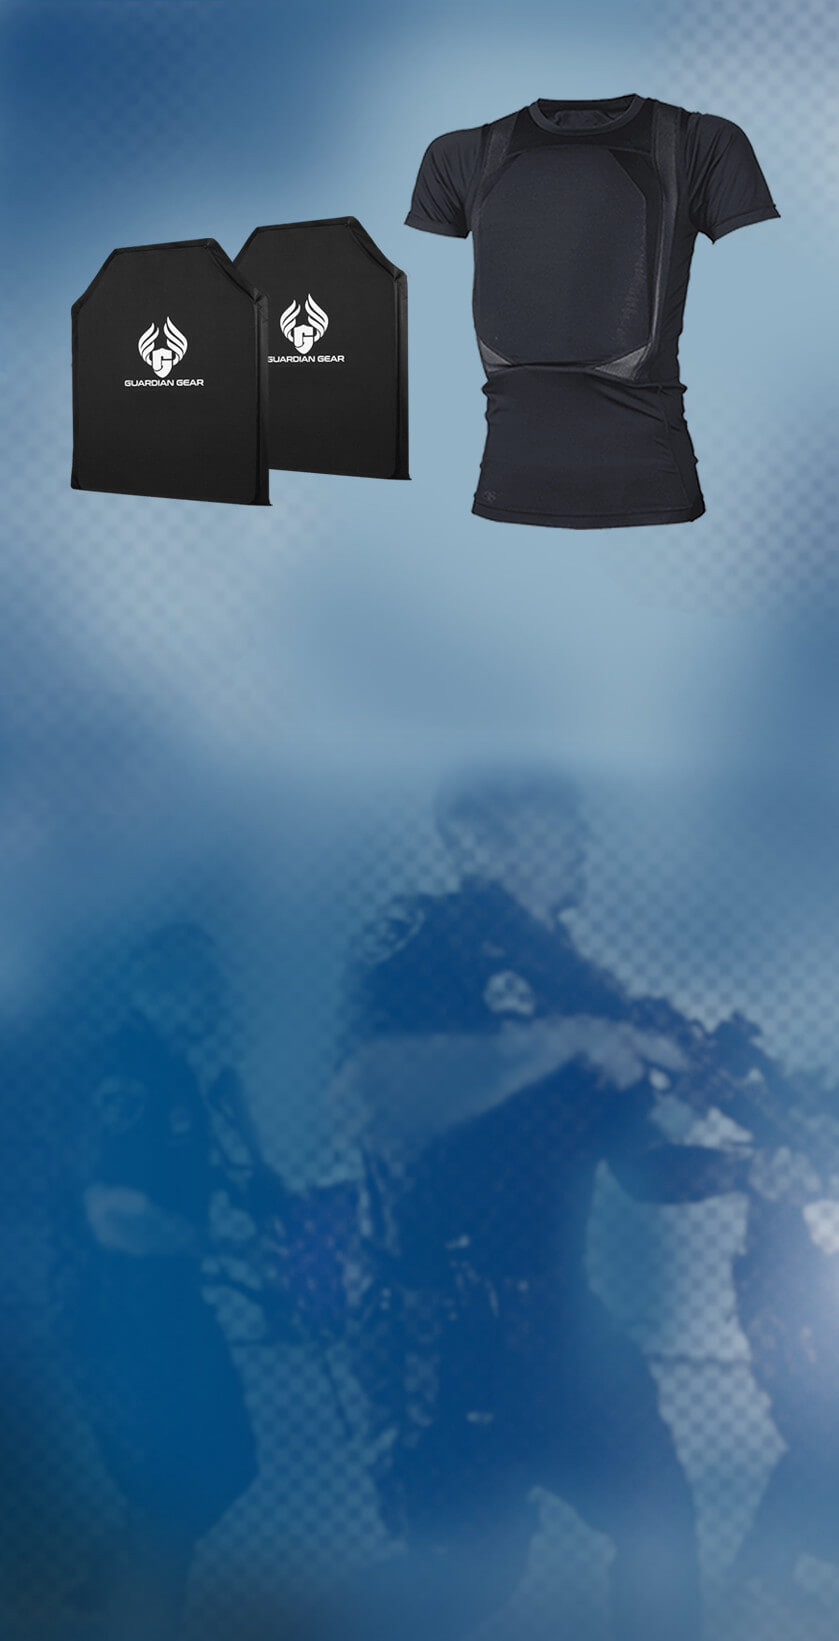 Concealed armor shirt bundle background mobile